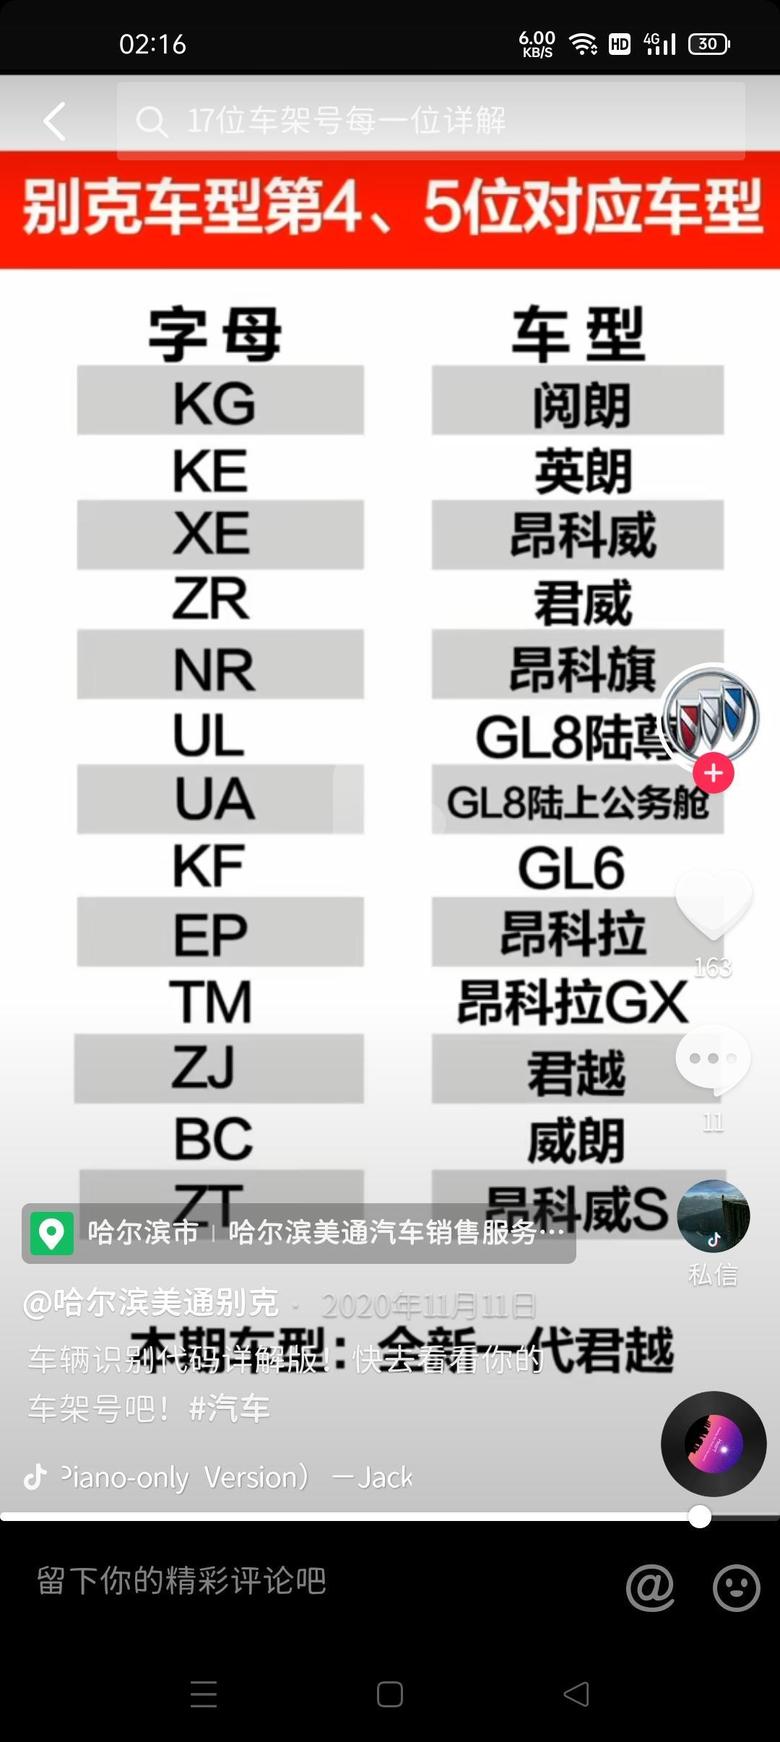 昂科威s 头三位LSG的L是中国，SG是上汽通用，第四、五位两个字母代表车型，第八位字母代表发动机排量，第十位字母代表车辆生产年份。